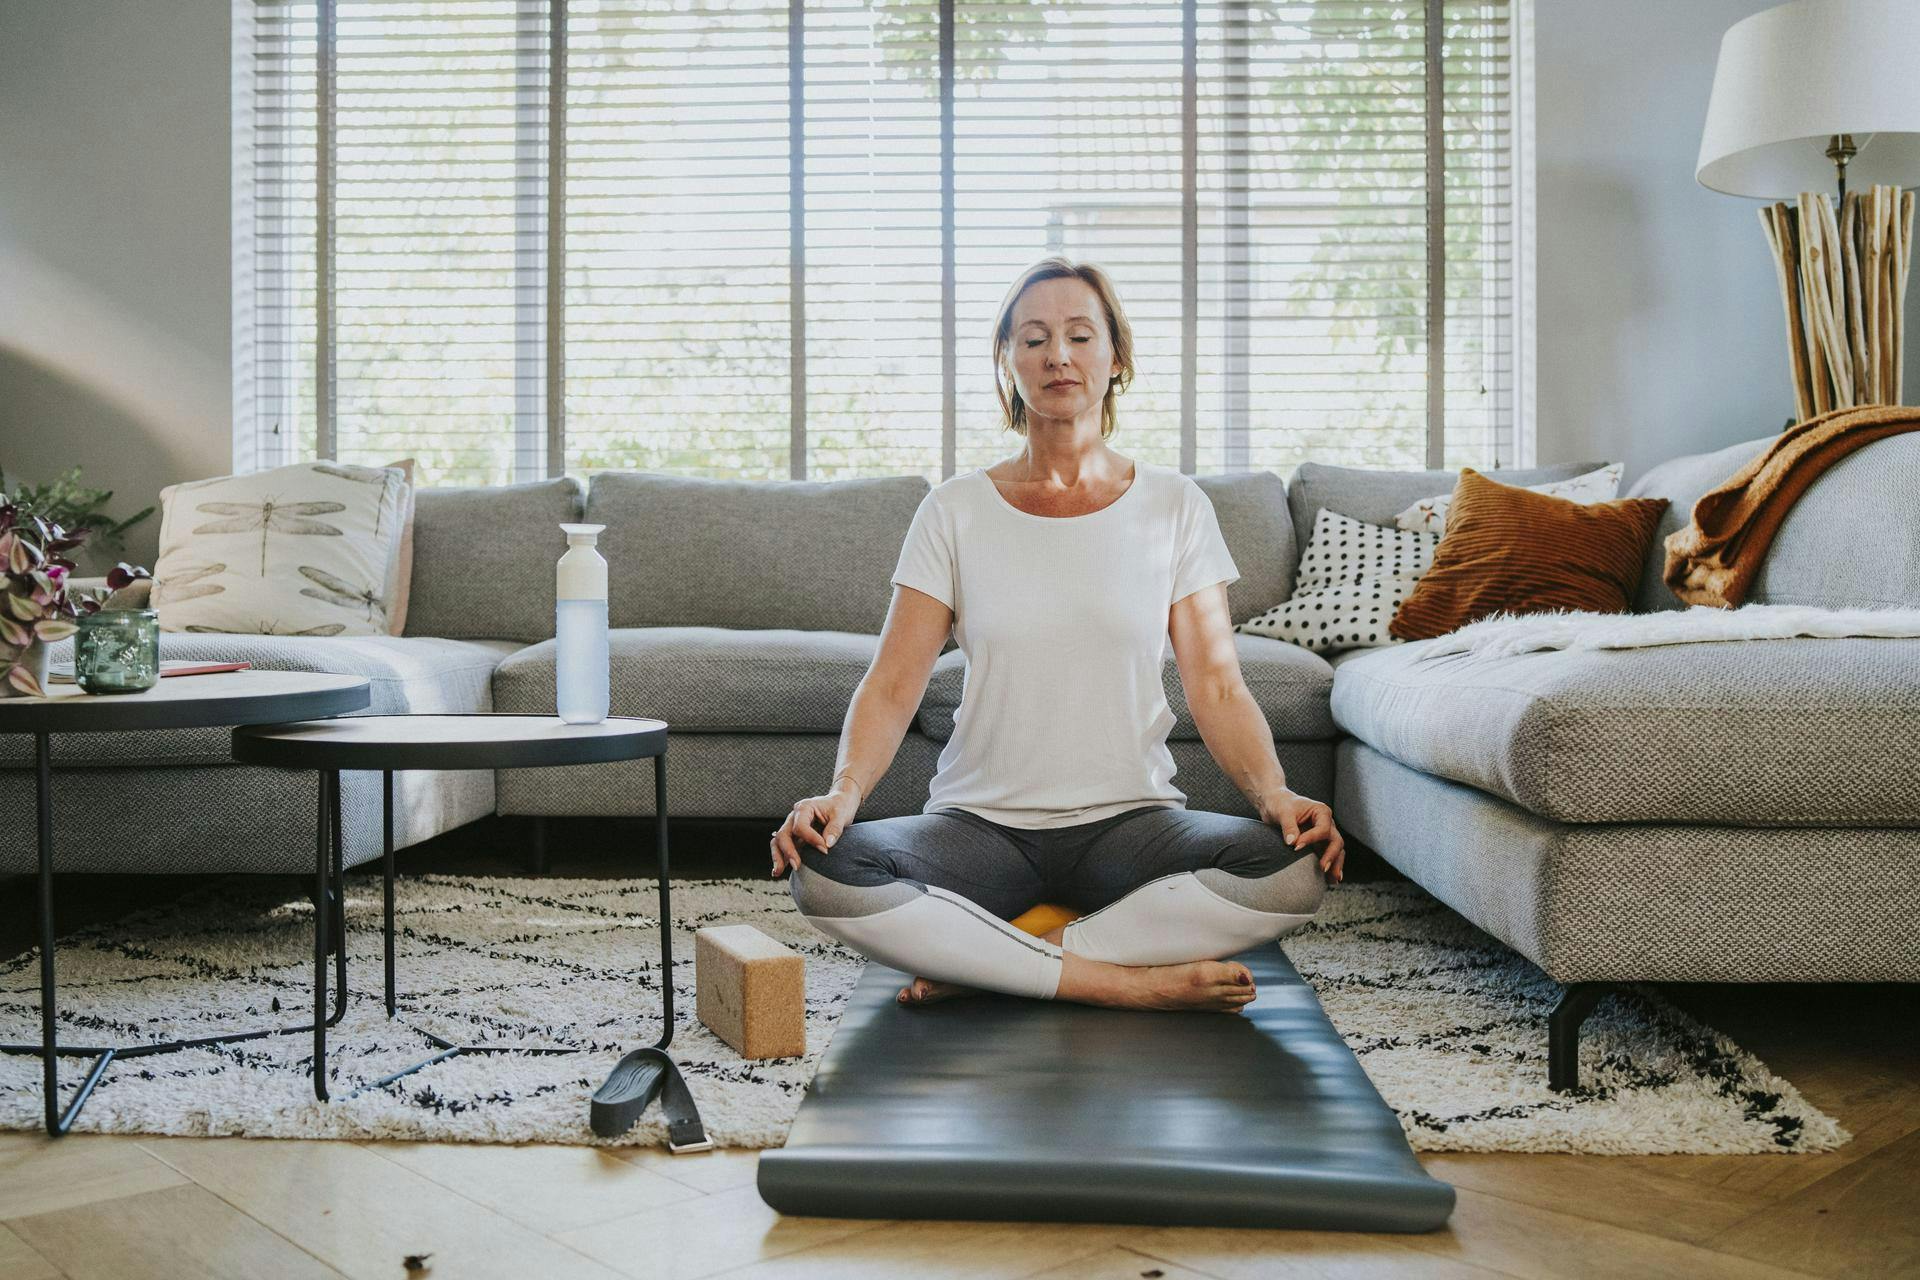 Een vrouw met een wit t-shirt zit op een yogamat in de woonkamer en mediteert met haar ogen dicht.